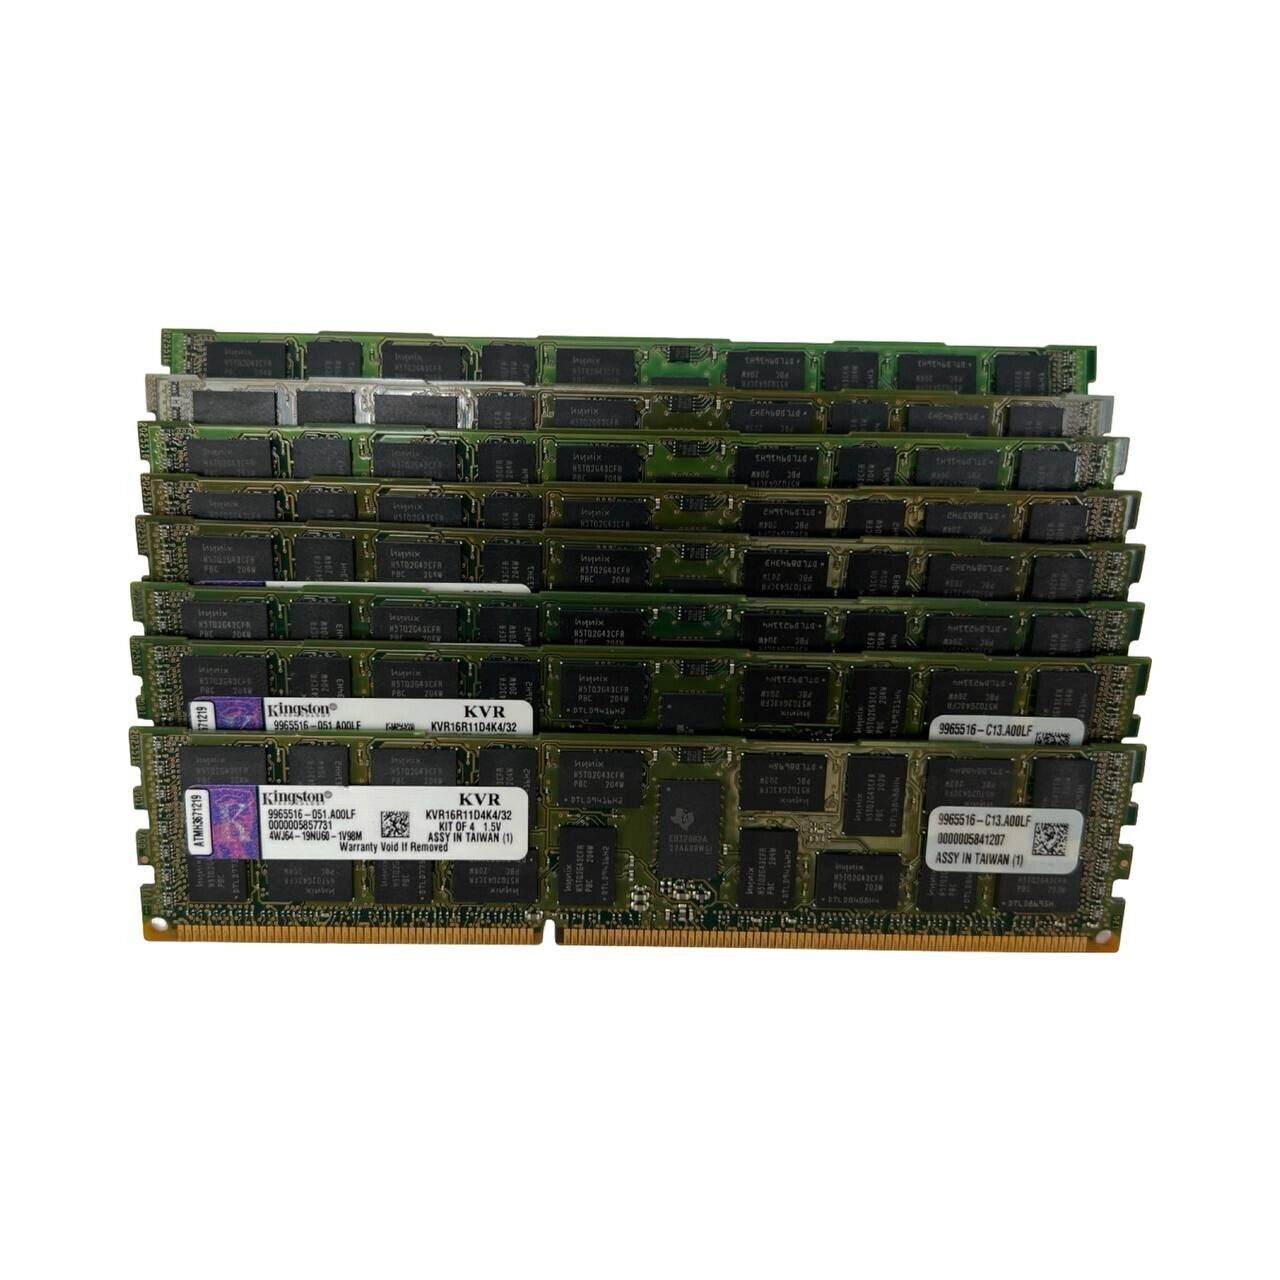 8x Kingston KVR16R11D4K4/32 64GB 8x8GB PC3 12800 DDR3 SDRAM ECC Server Memory